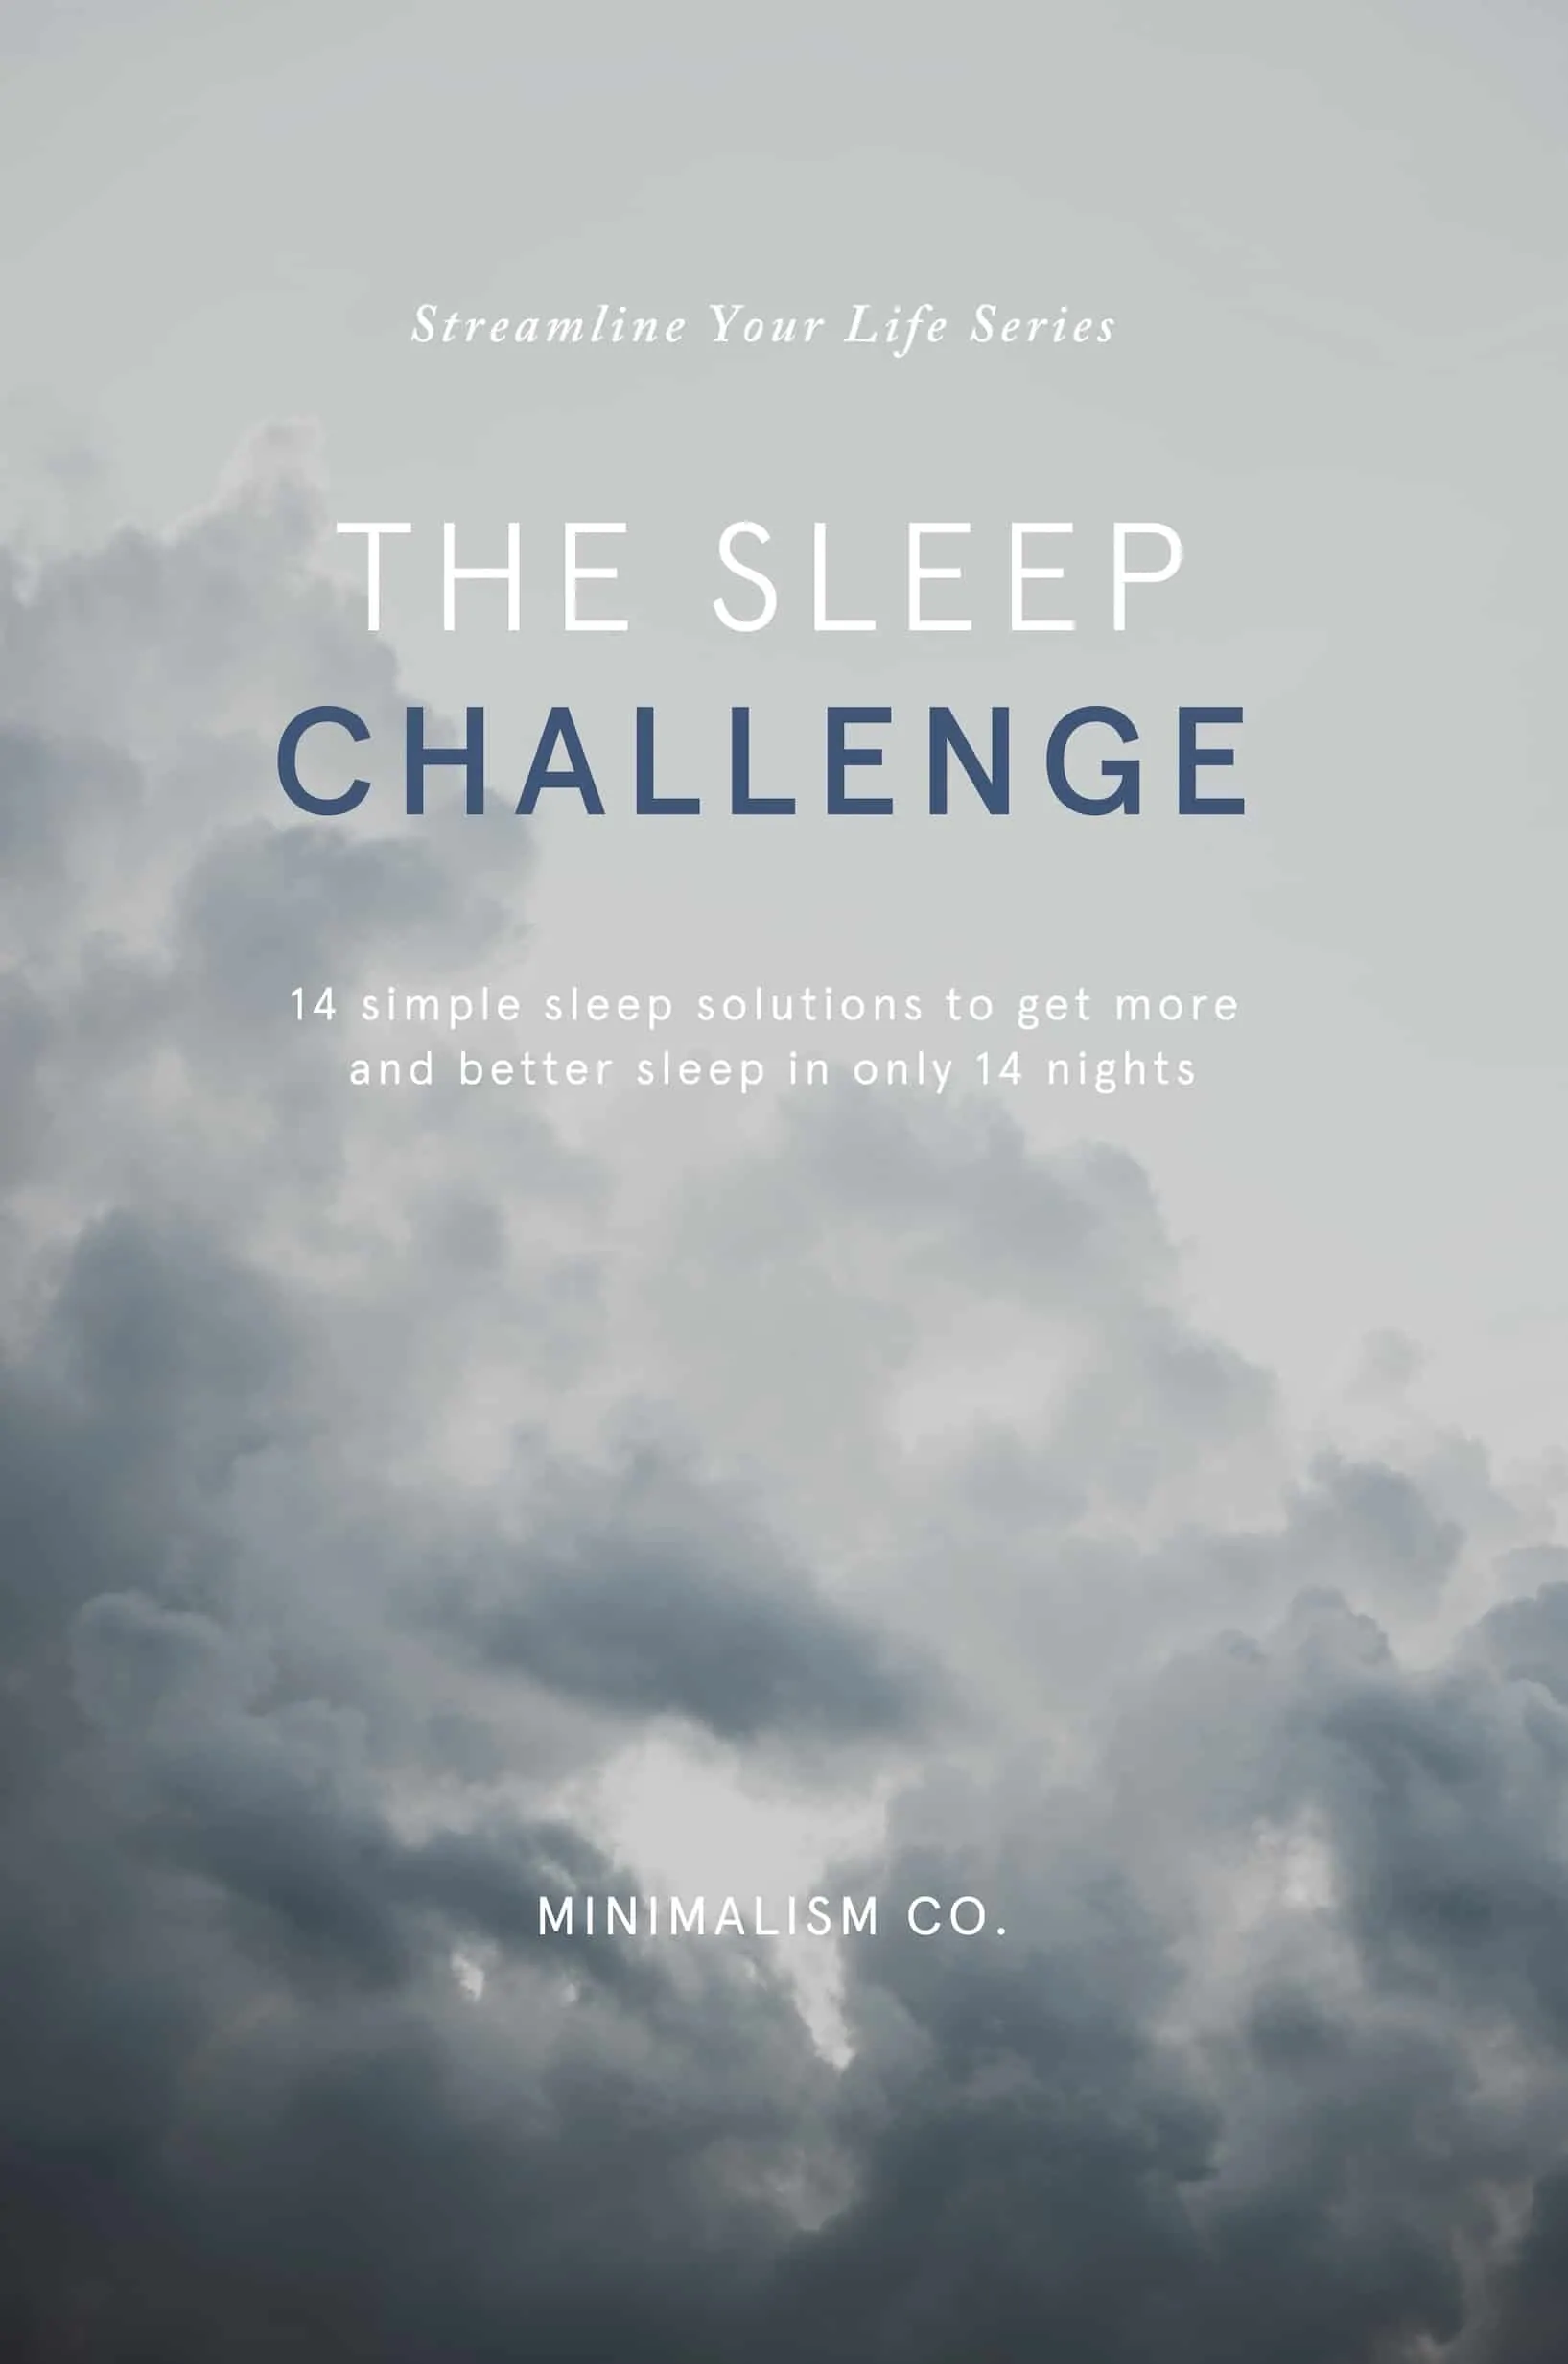 The sleep challenge book